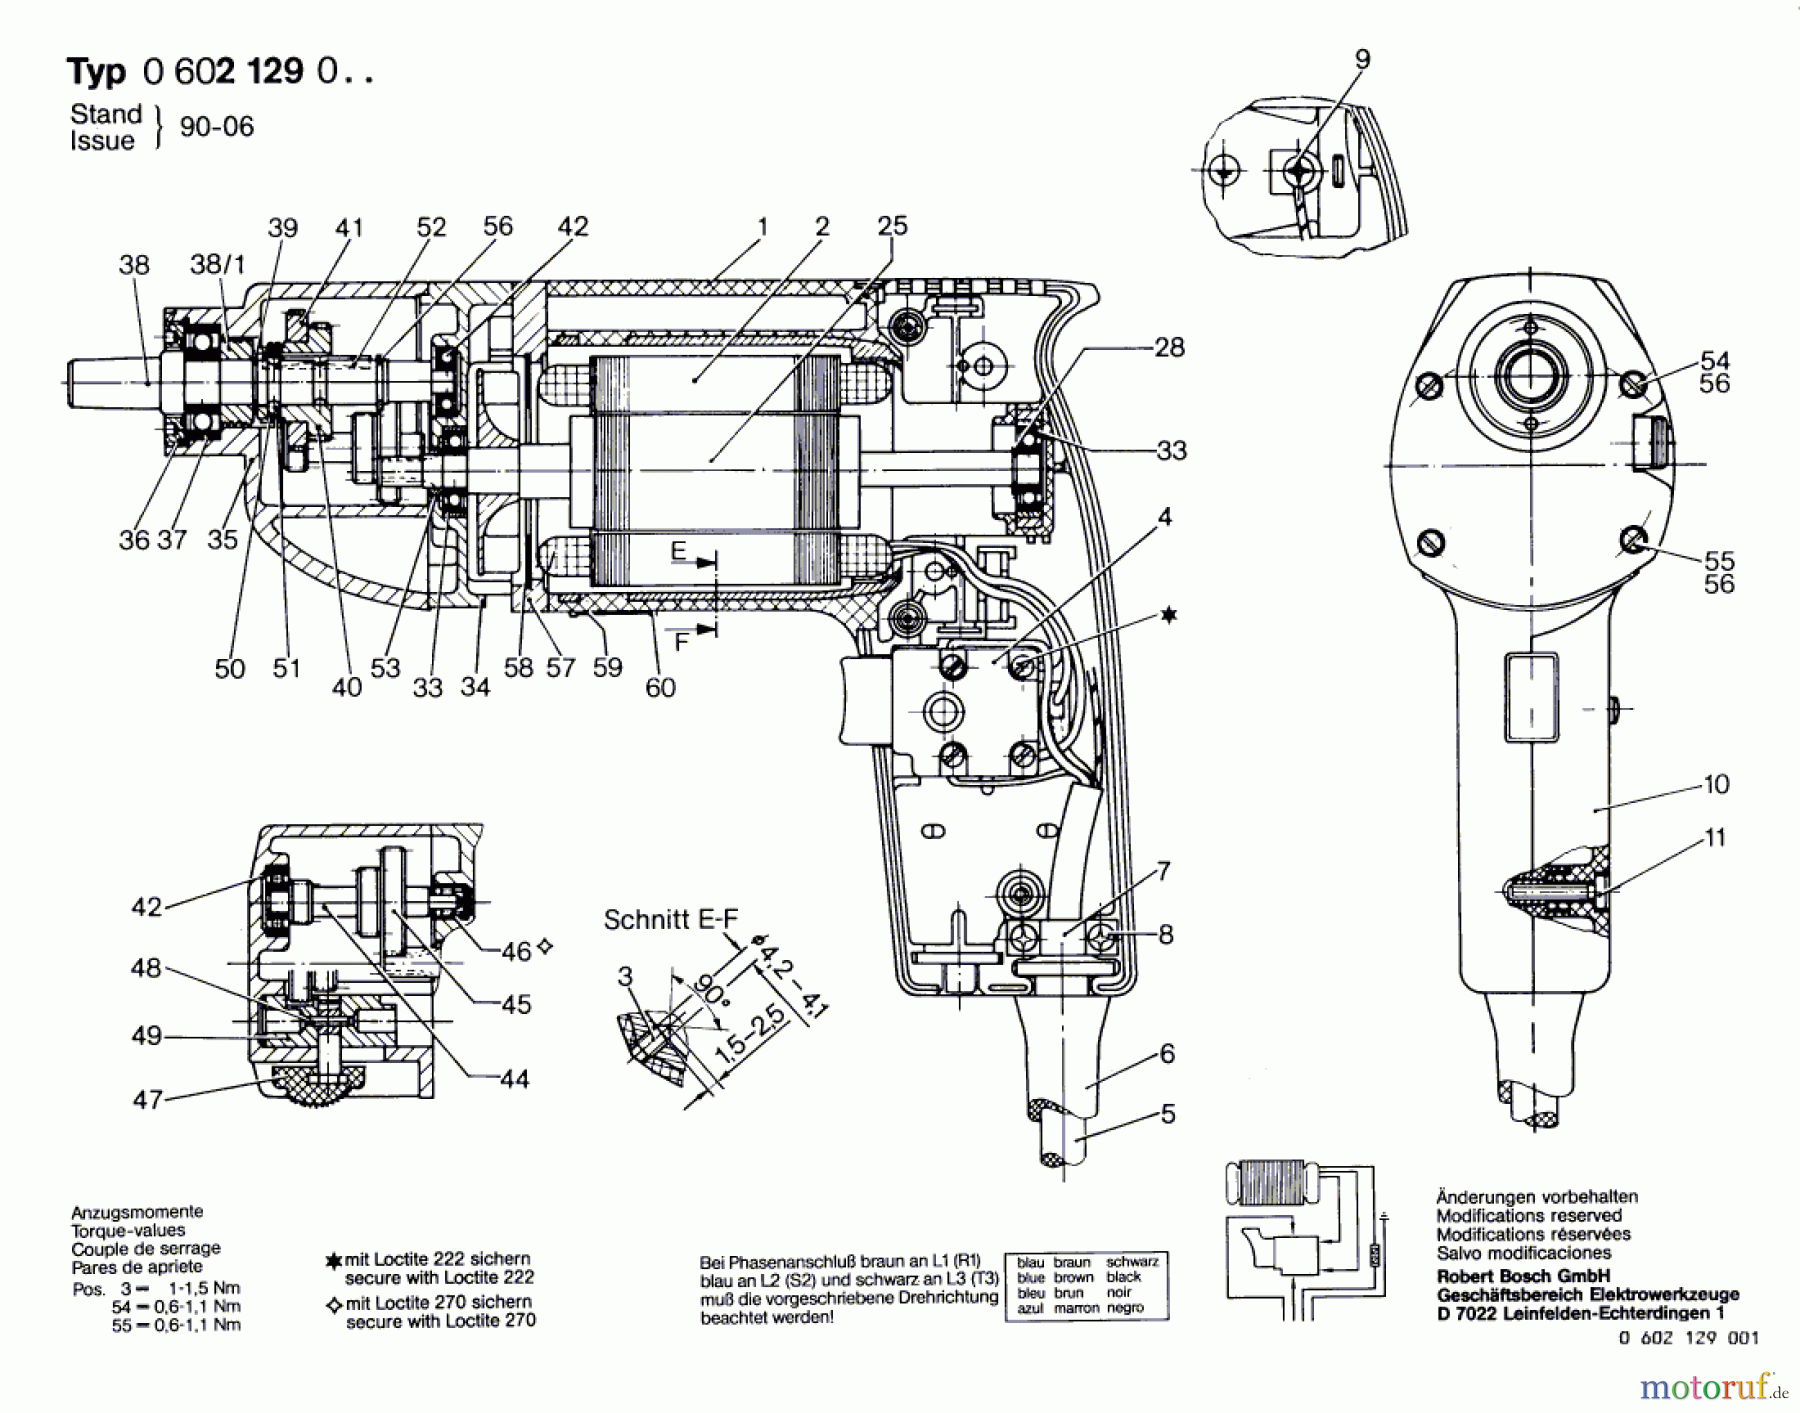  Bosch Werkzeug Hf-Bohrmaschine ---- Seite 1